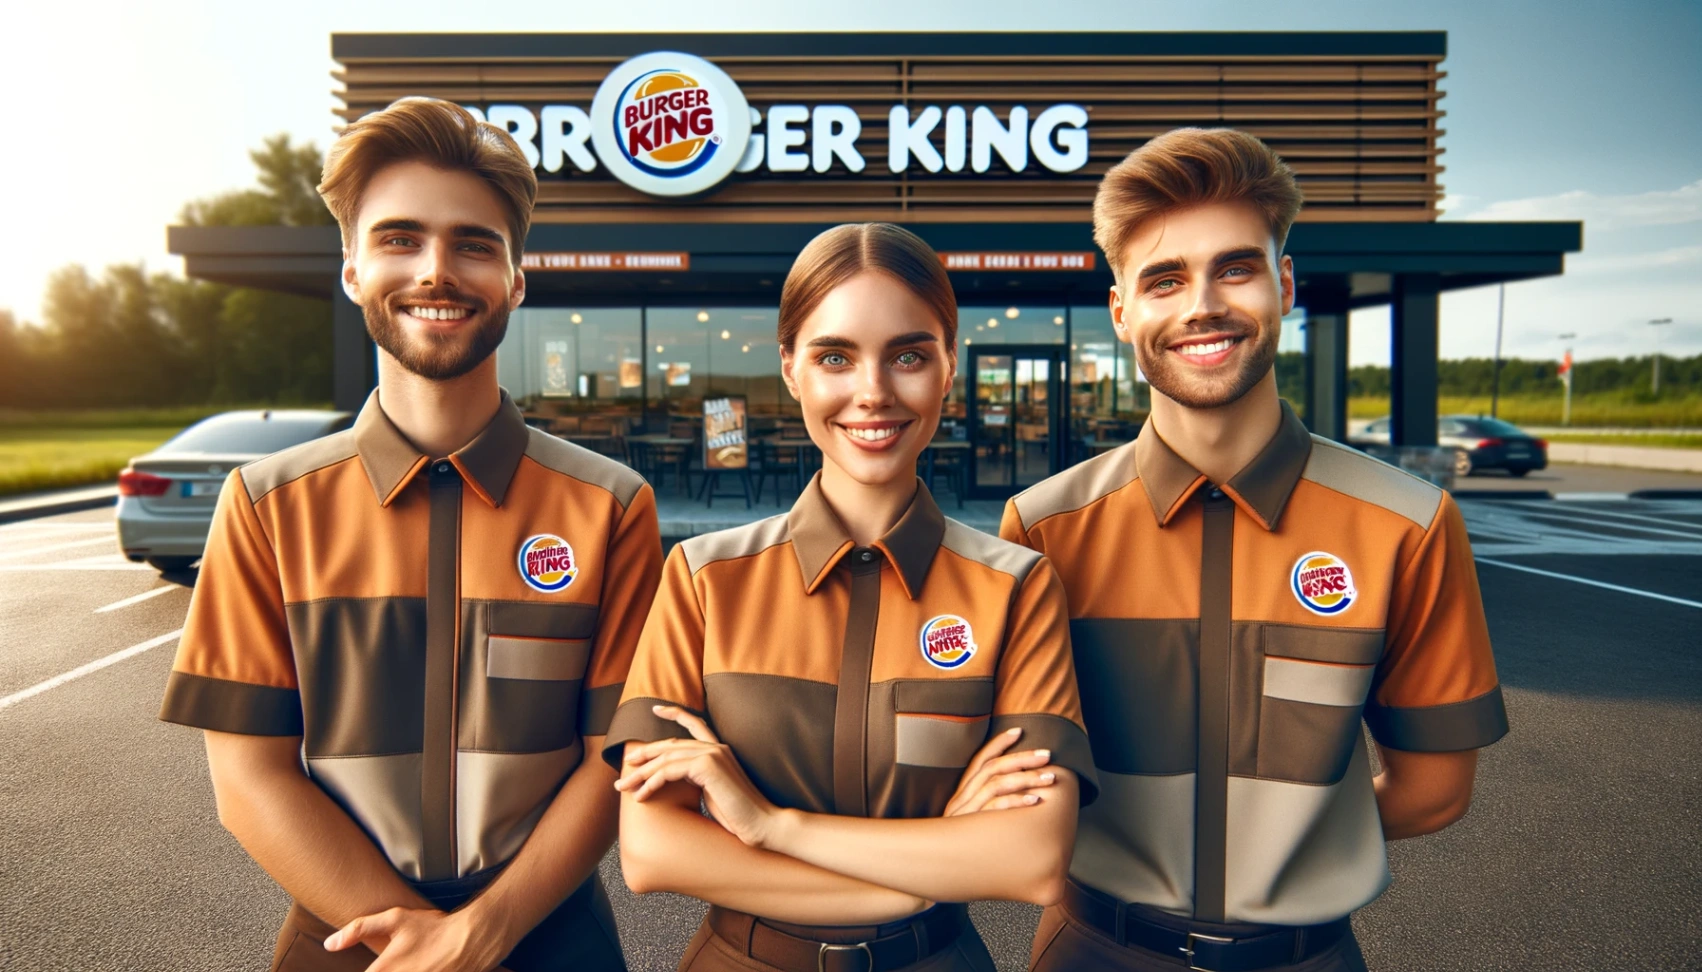 Burger King - Erfahren Sie, wie Sie sich um Stellen bewerben